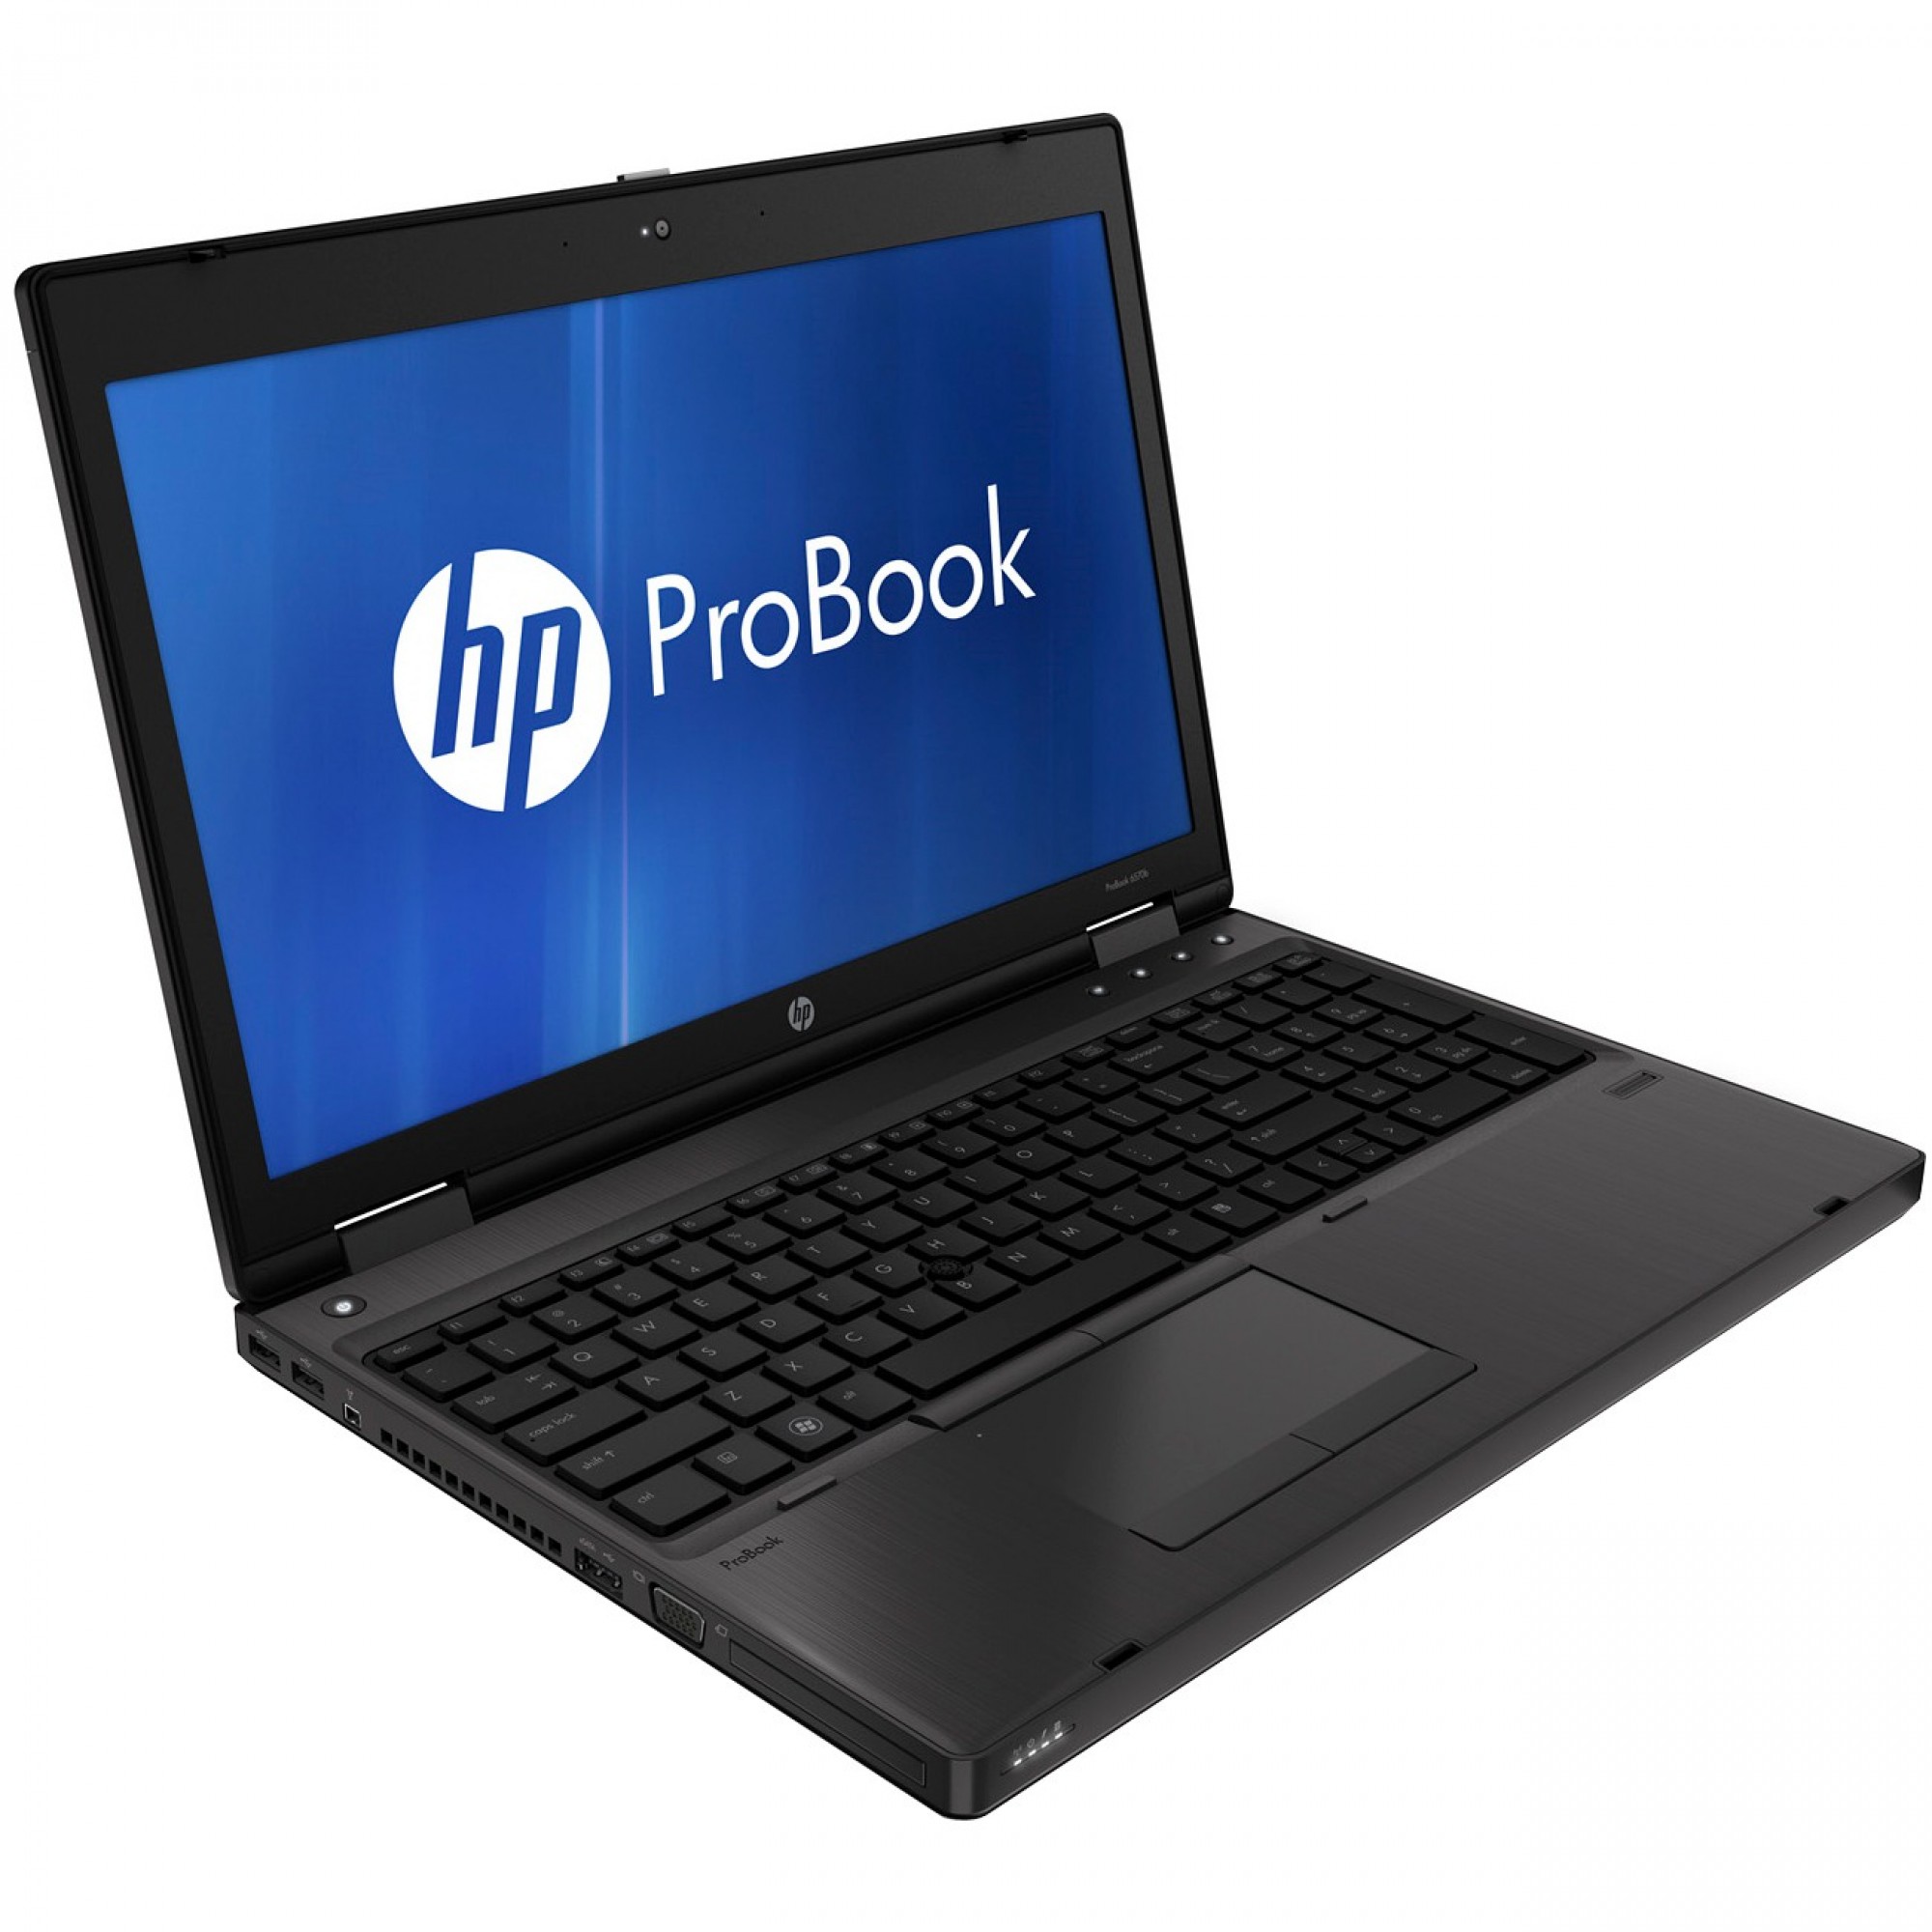 ドライブありHP ProBook 6570bCore i5 16GB HDD250GB スーパーマルチ 無線LAN Windows10 64bitWPSOffice 15.6インチ  パソコン  ノートパソコン